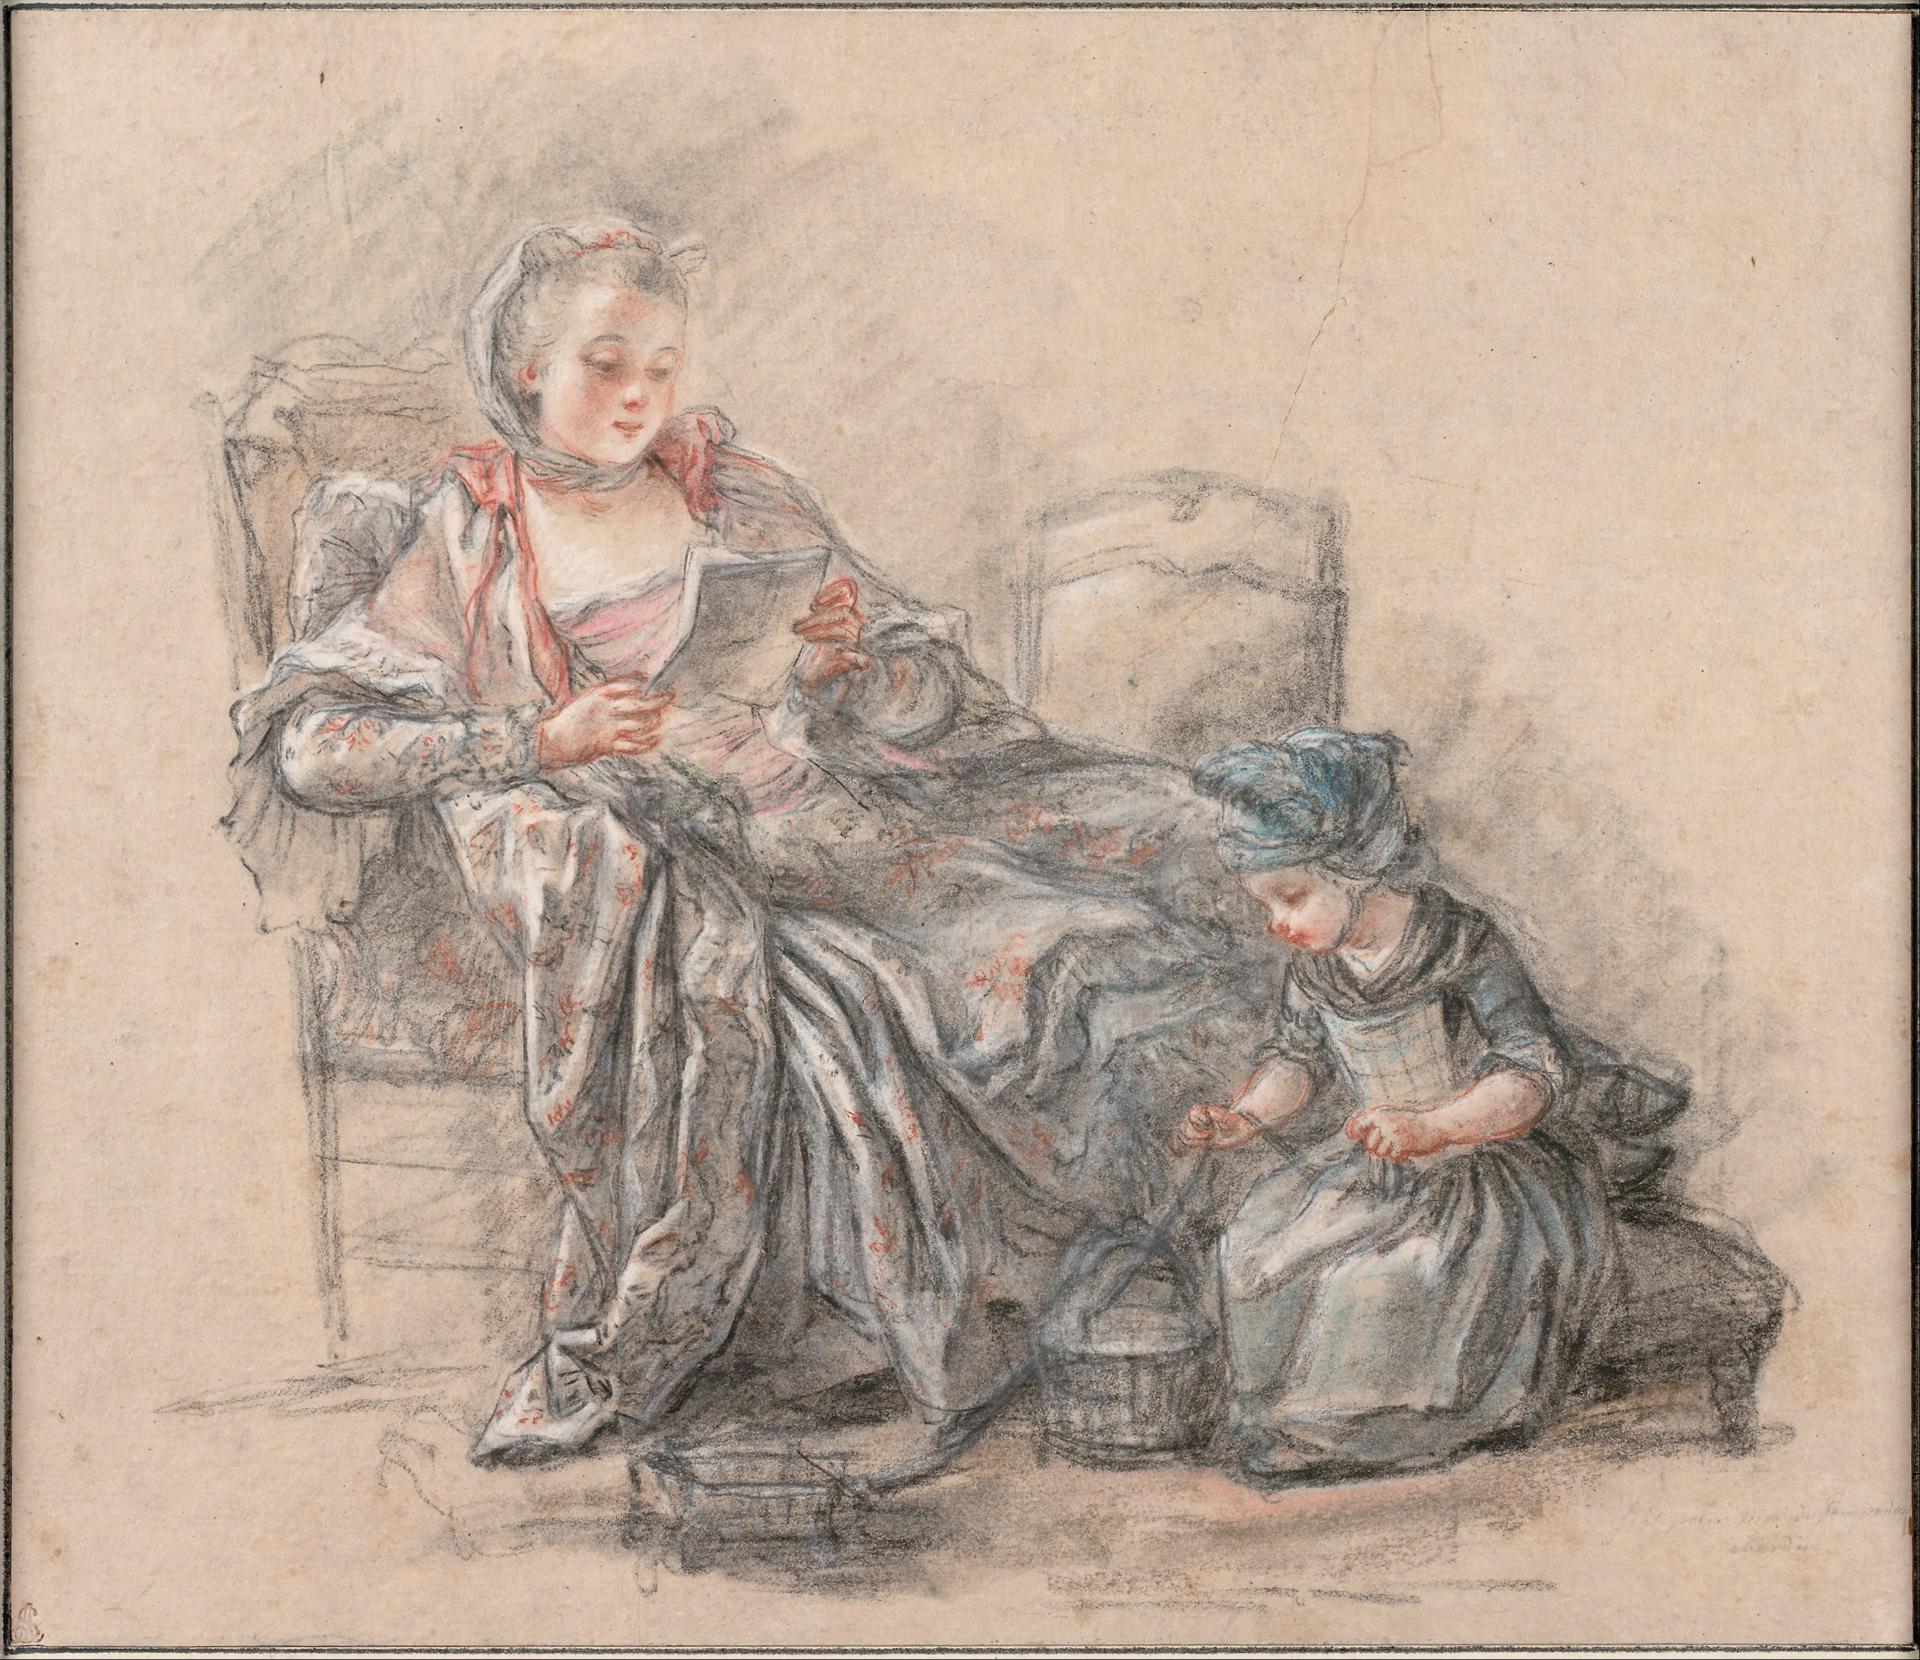 0037_弗朗索瓦盖林_Francois Guerin before 1751 - after 1791 French-Woman Readin_2776x2400PX_TIF_97DPI_19_0